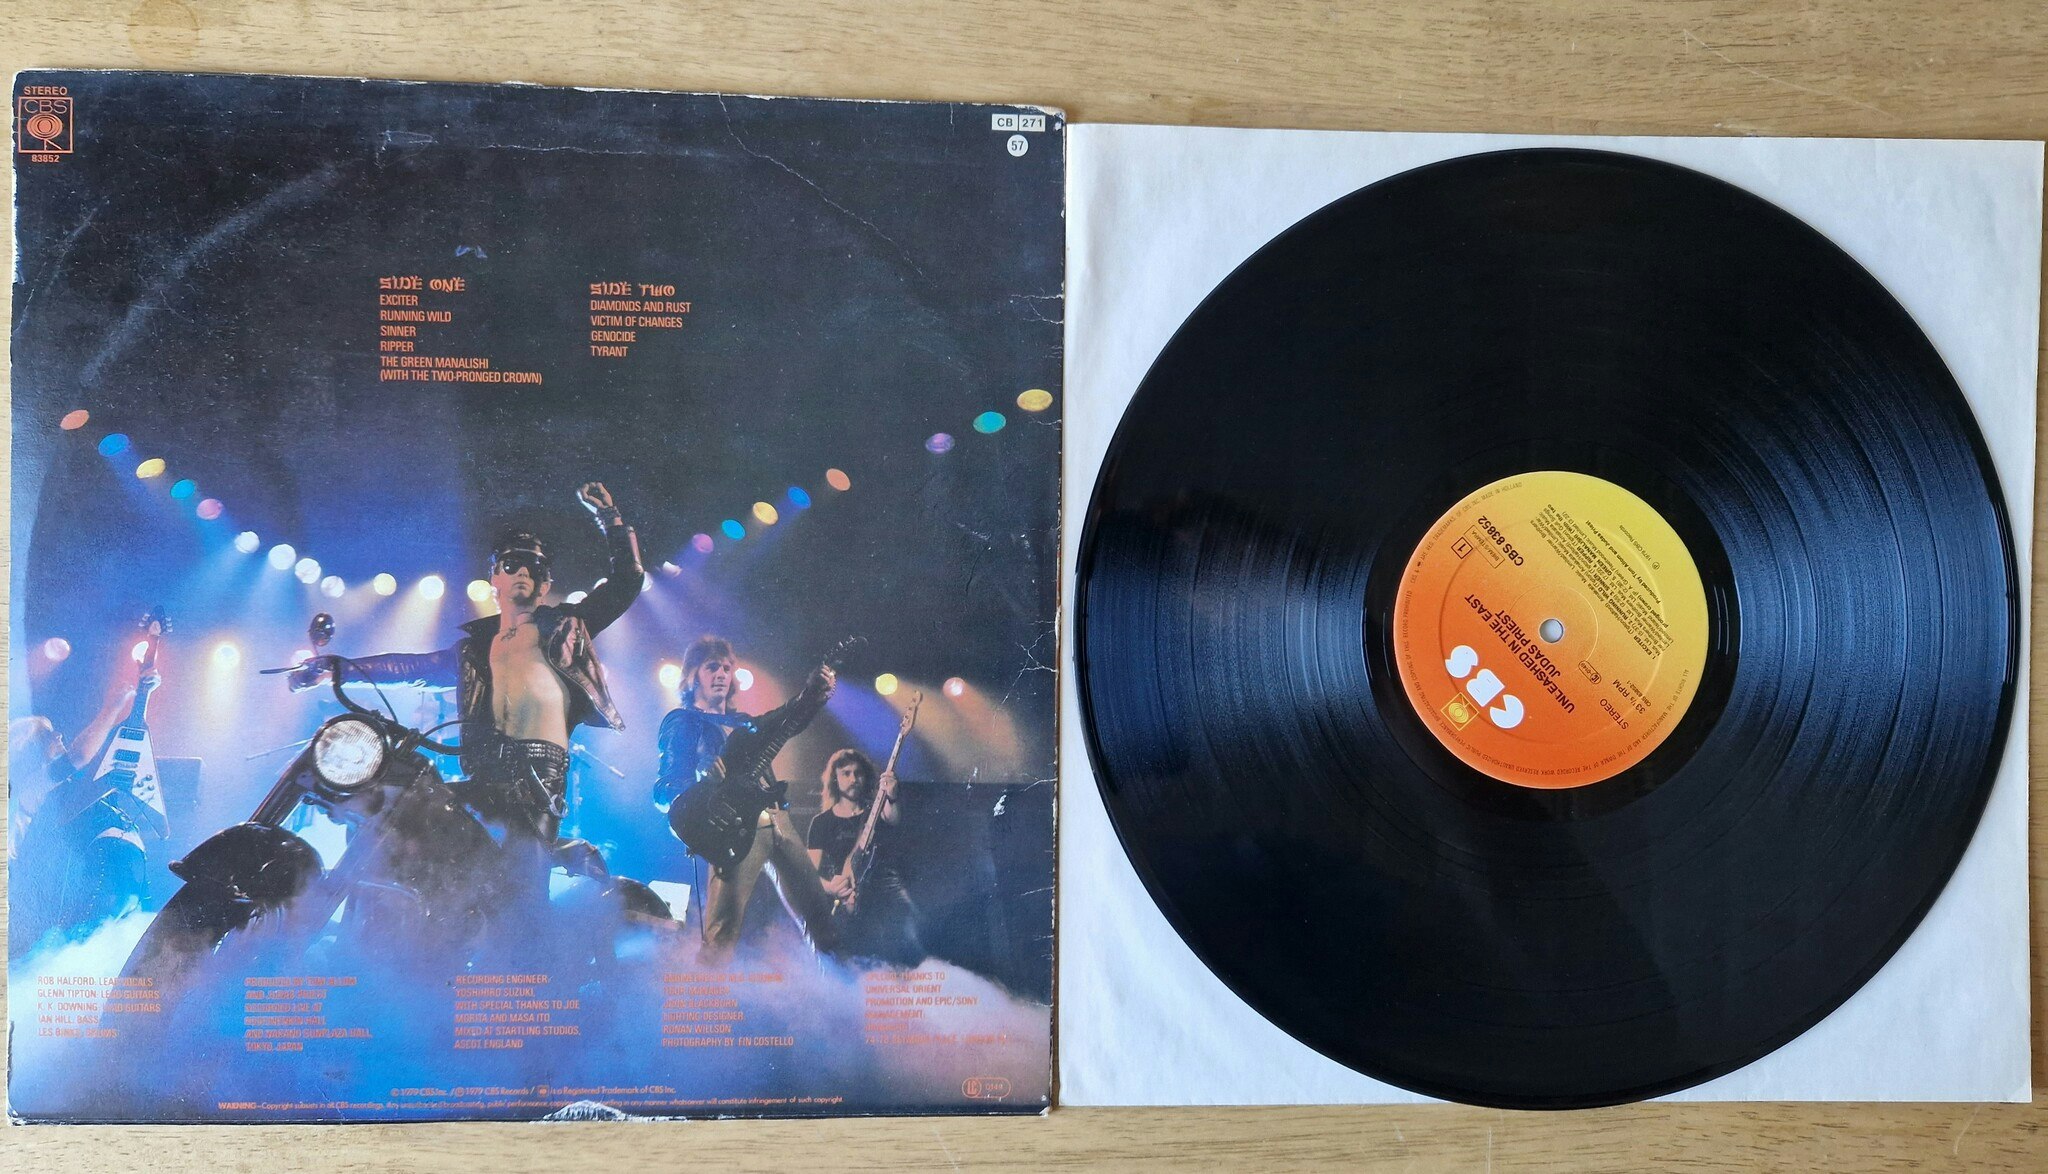 Judas Priest, Unleashed in the east. Vinyl LP